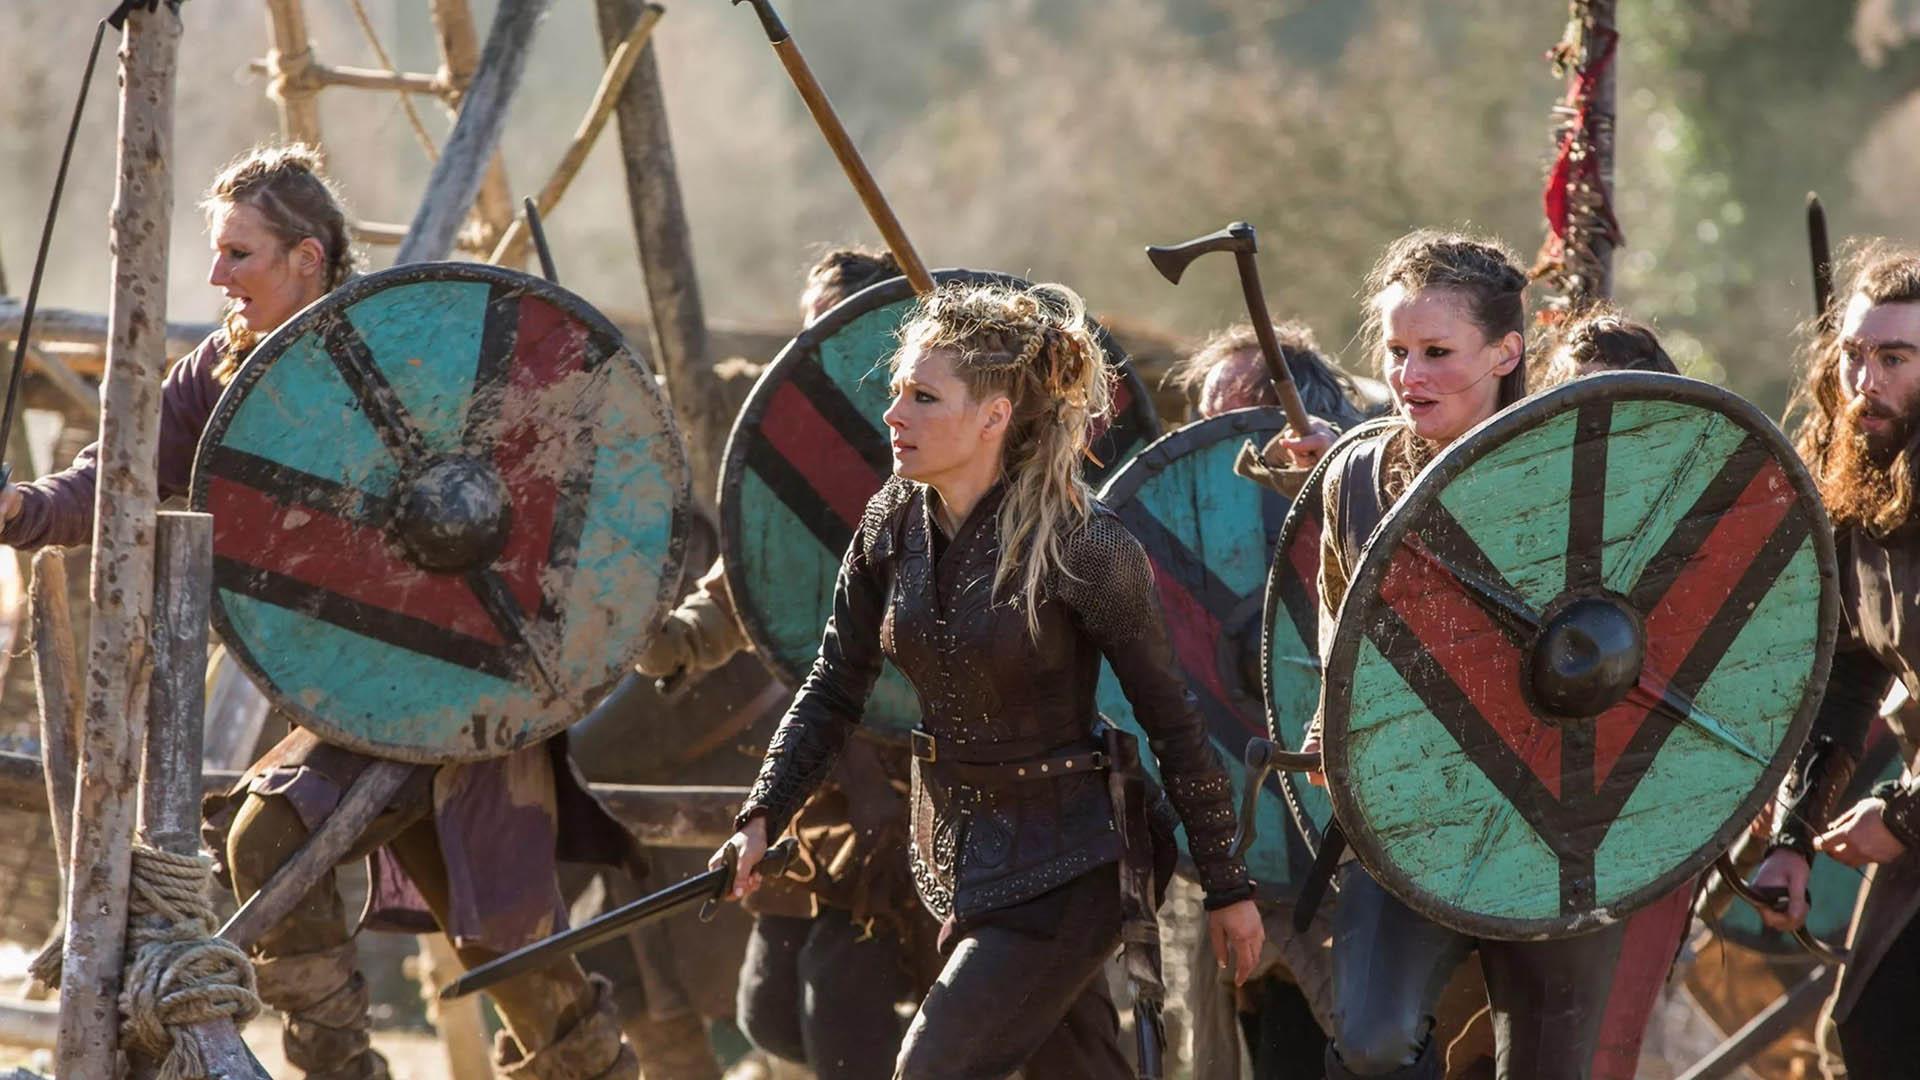 شخصیت لاگرتا و دیگر مبارزهای زنِ وایکینگ در سریال vikings